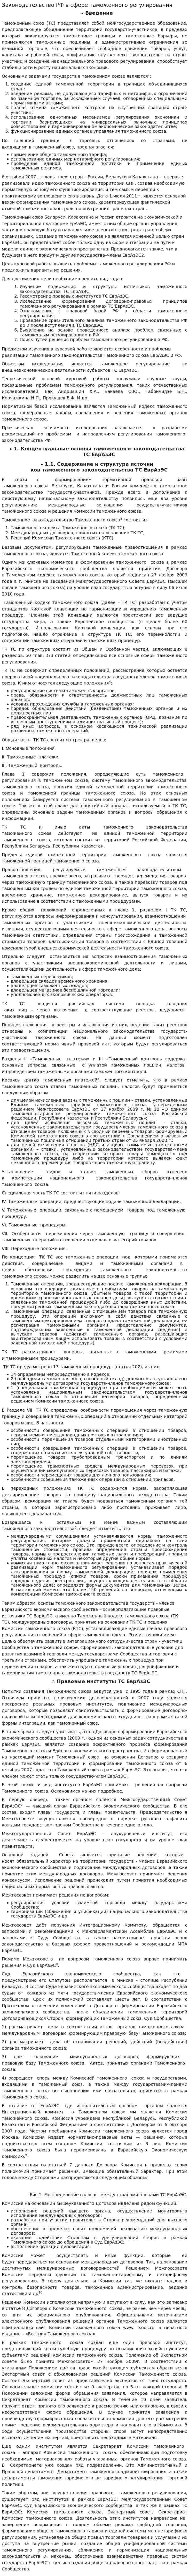 Законодательство РФ в сфере таможенного регулирования